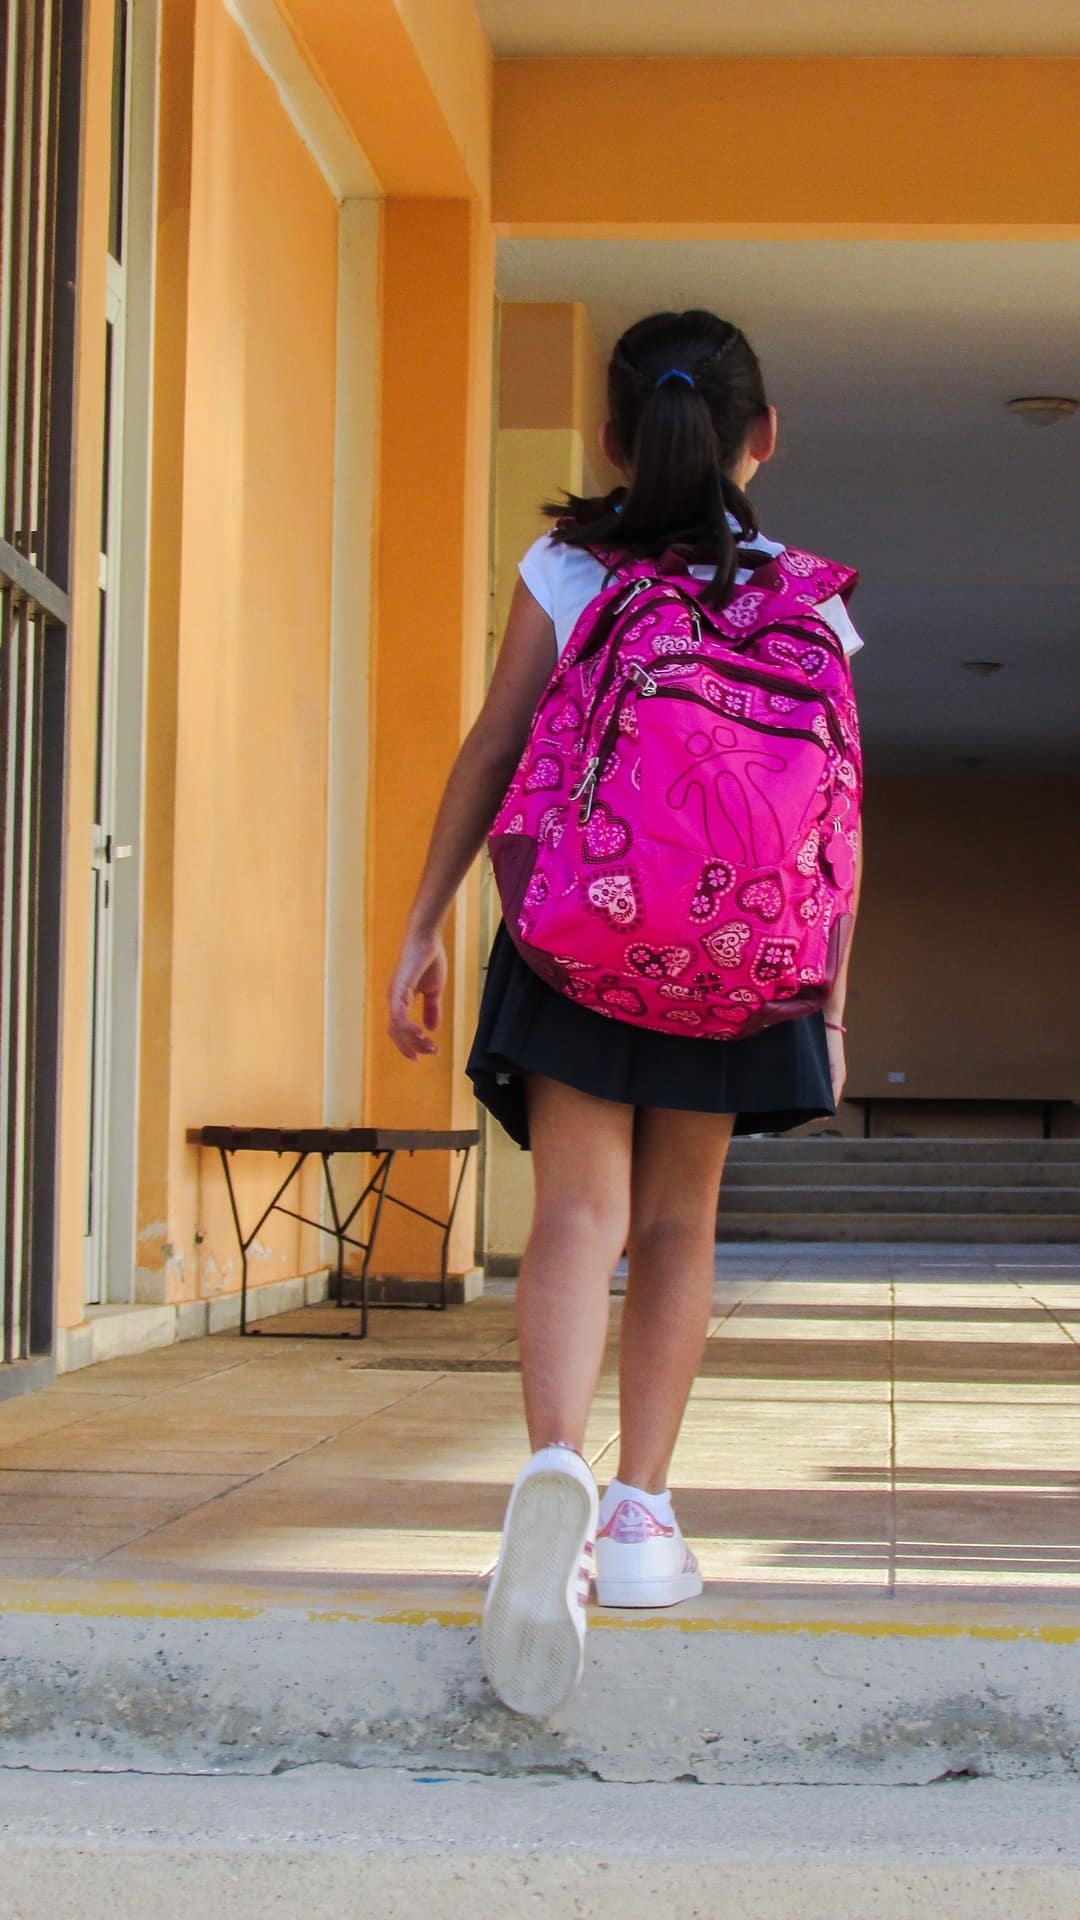 okul çantaları çocuğun omurgasına müdahale ediyor